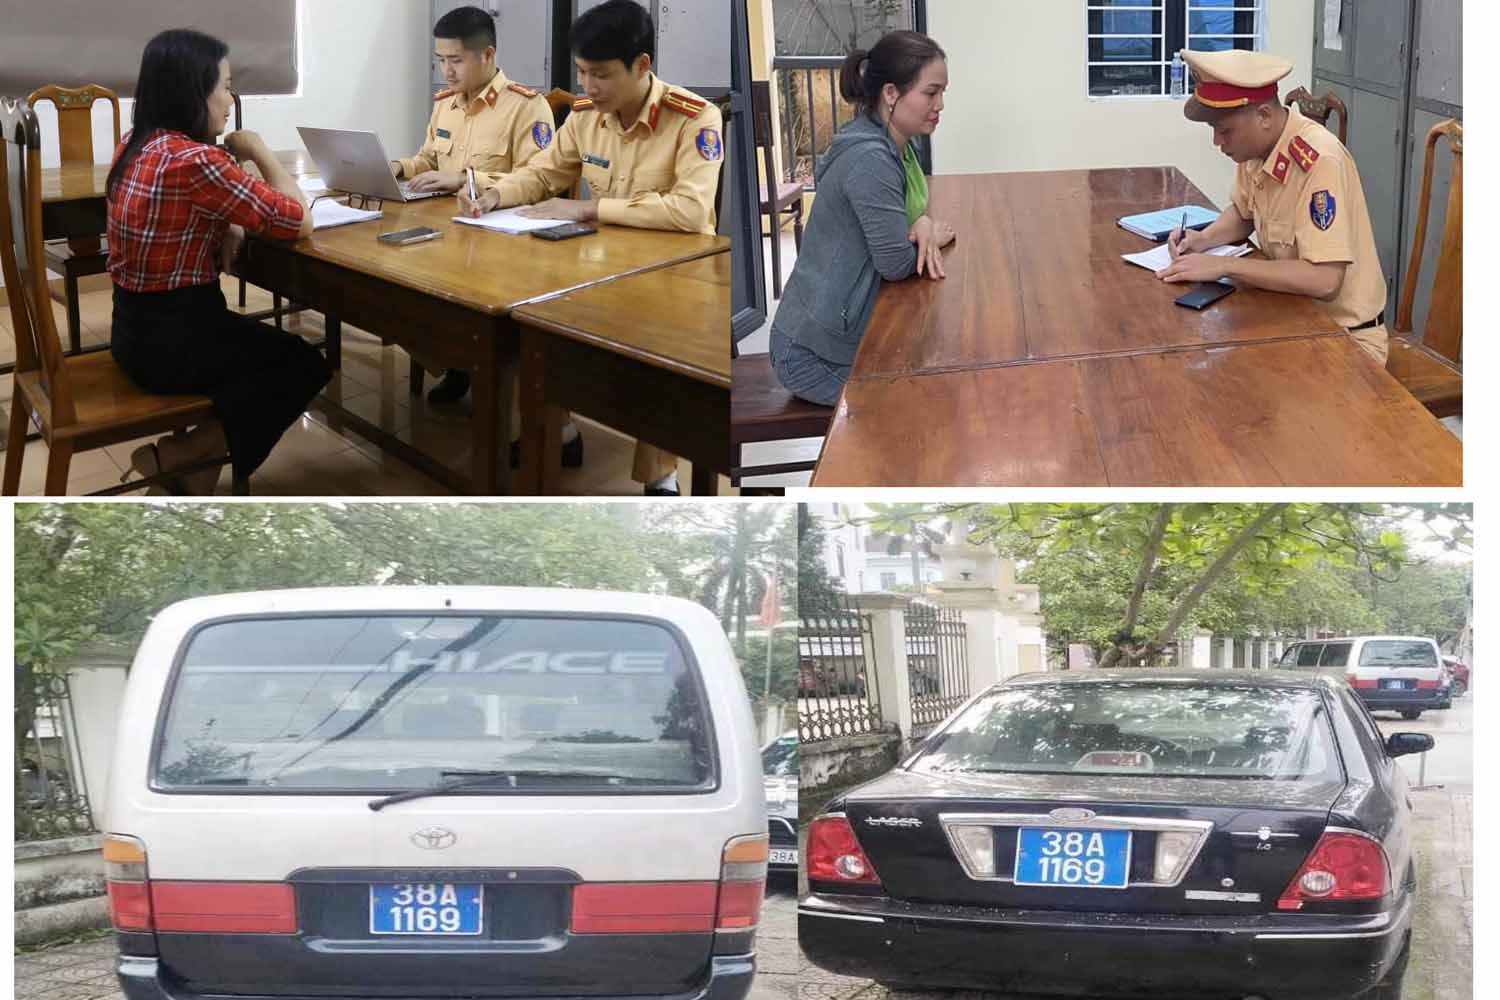 Công an Thành phố Hà Tĩnh làm việc với những người liên quan về 2 xe ô tô cùng mang biển xanh 38A - 1169. Ảnh: Trần Tuấn.